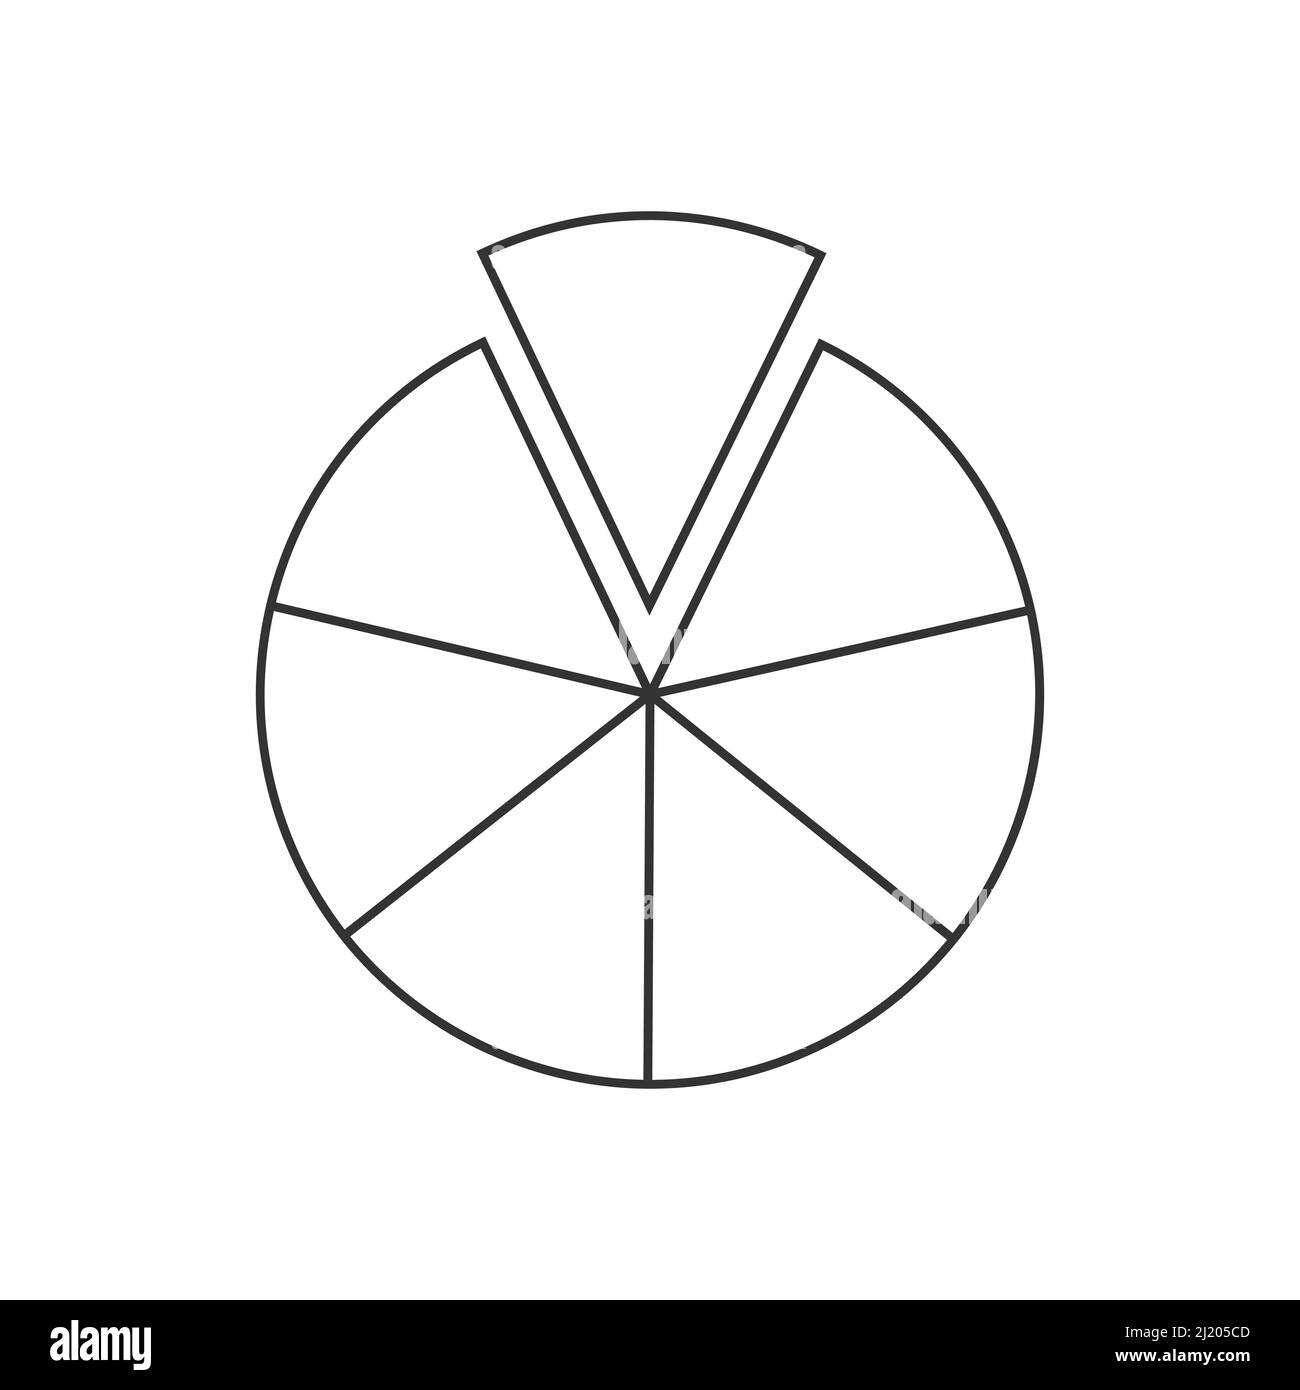 Cerchio diviso in 7 segmenti. Forma a torta o pizza tagliata in sette fette uguali. Esempio di grafico statistico rotondo isolato su sfondo bianco. Illustrazione del contorno vettoriale Illustrazione Vettoriale